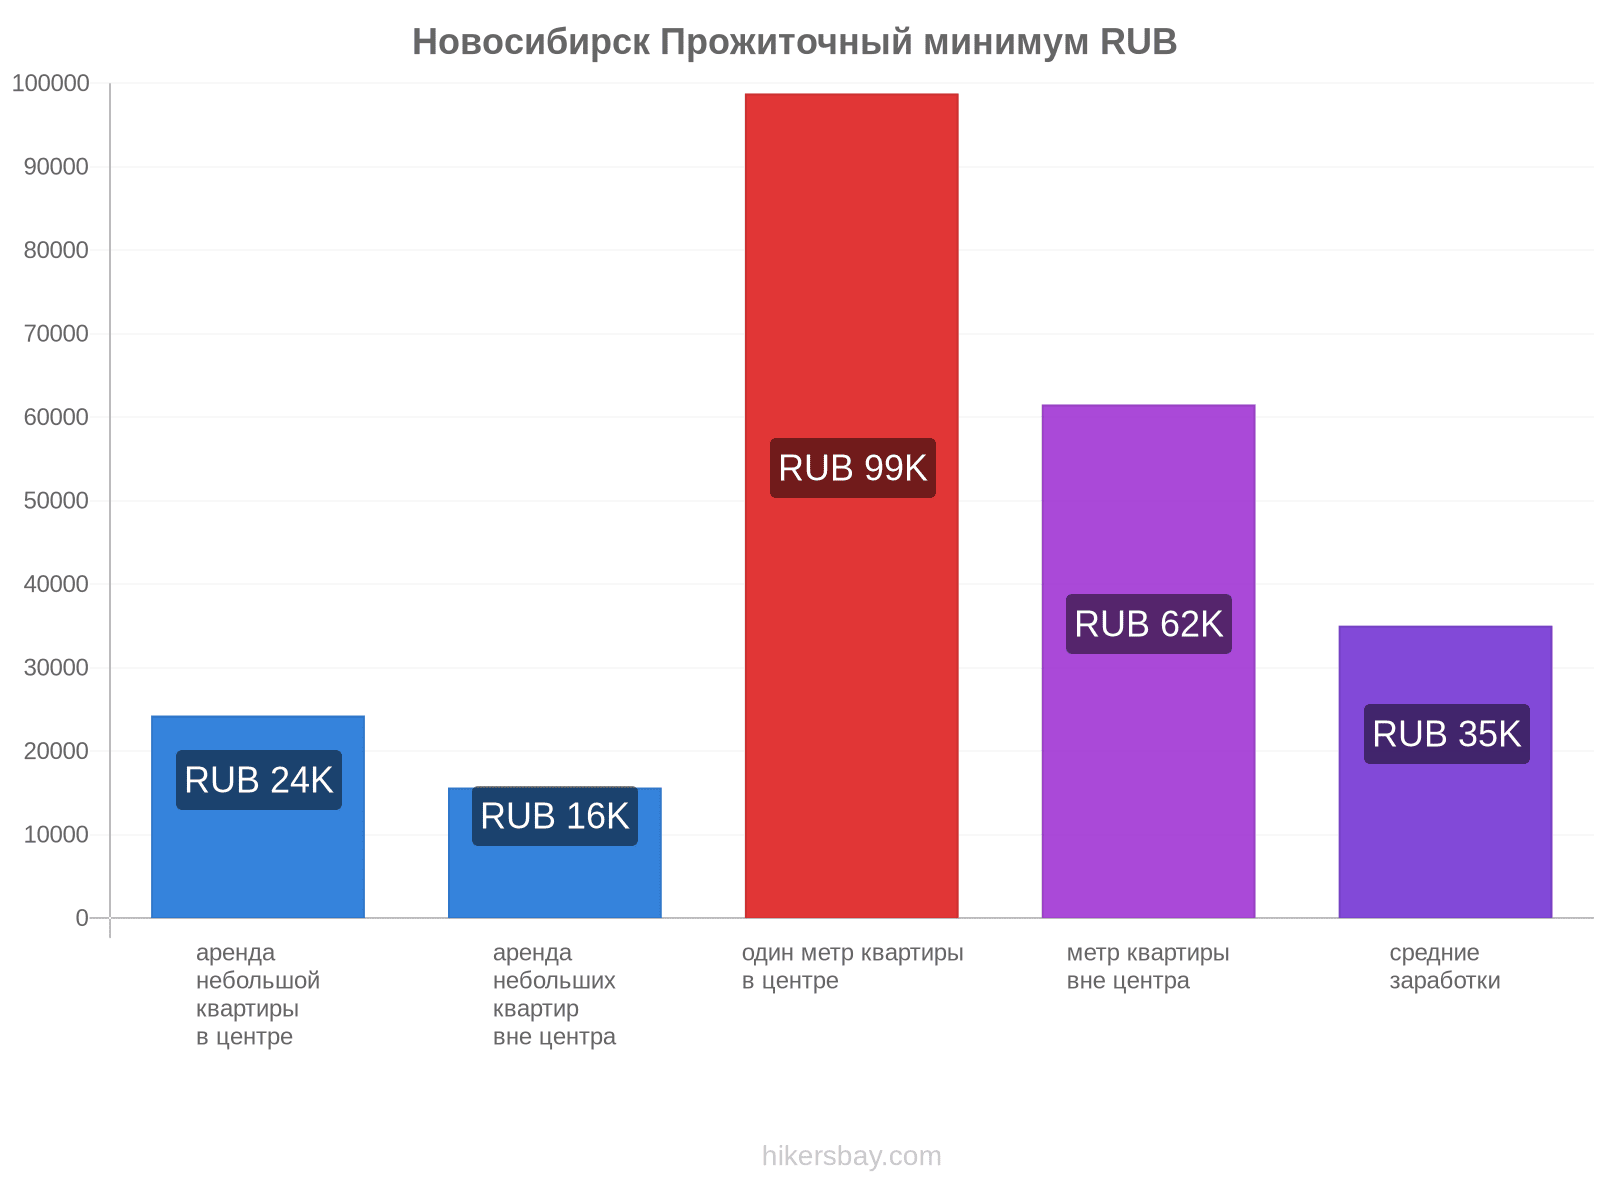 Новосибирск стоимость жизни hikersbay.com